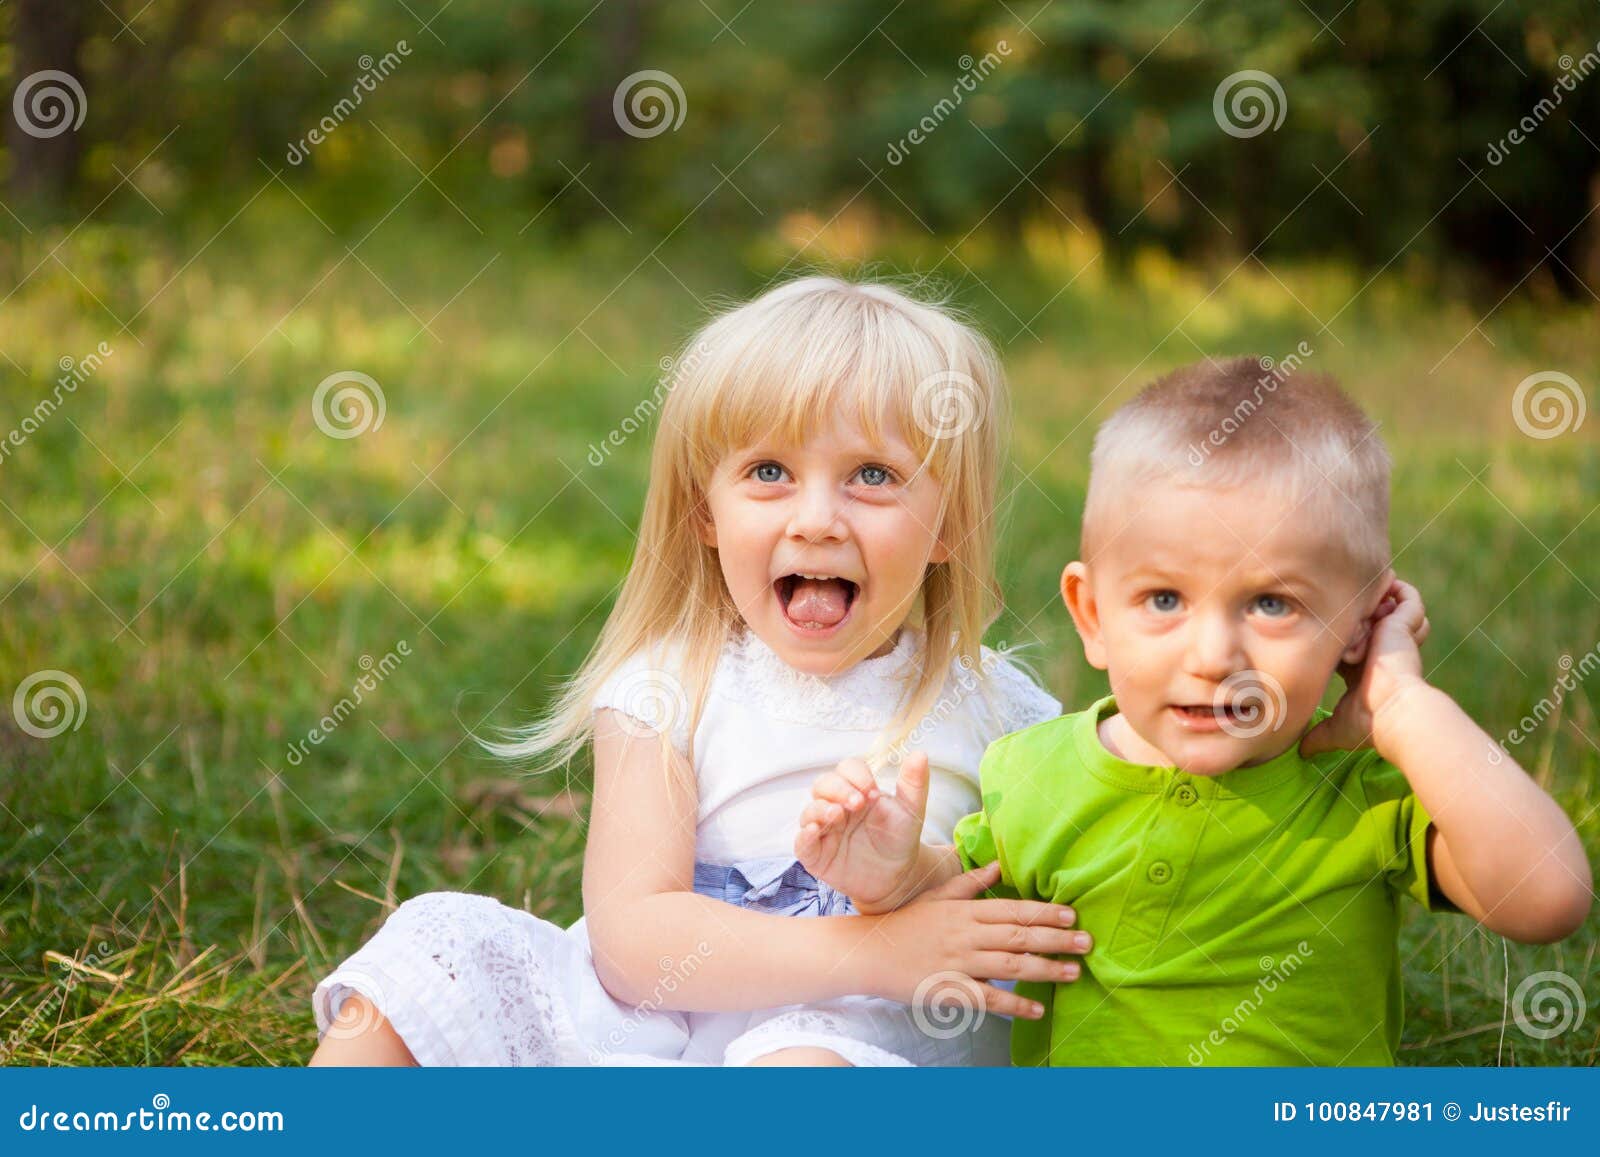 Смешные Фото Мальчик И Девочка